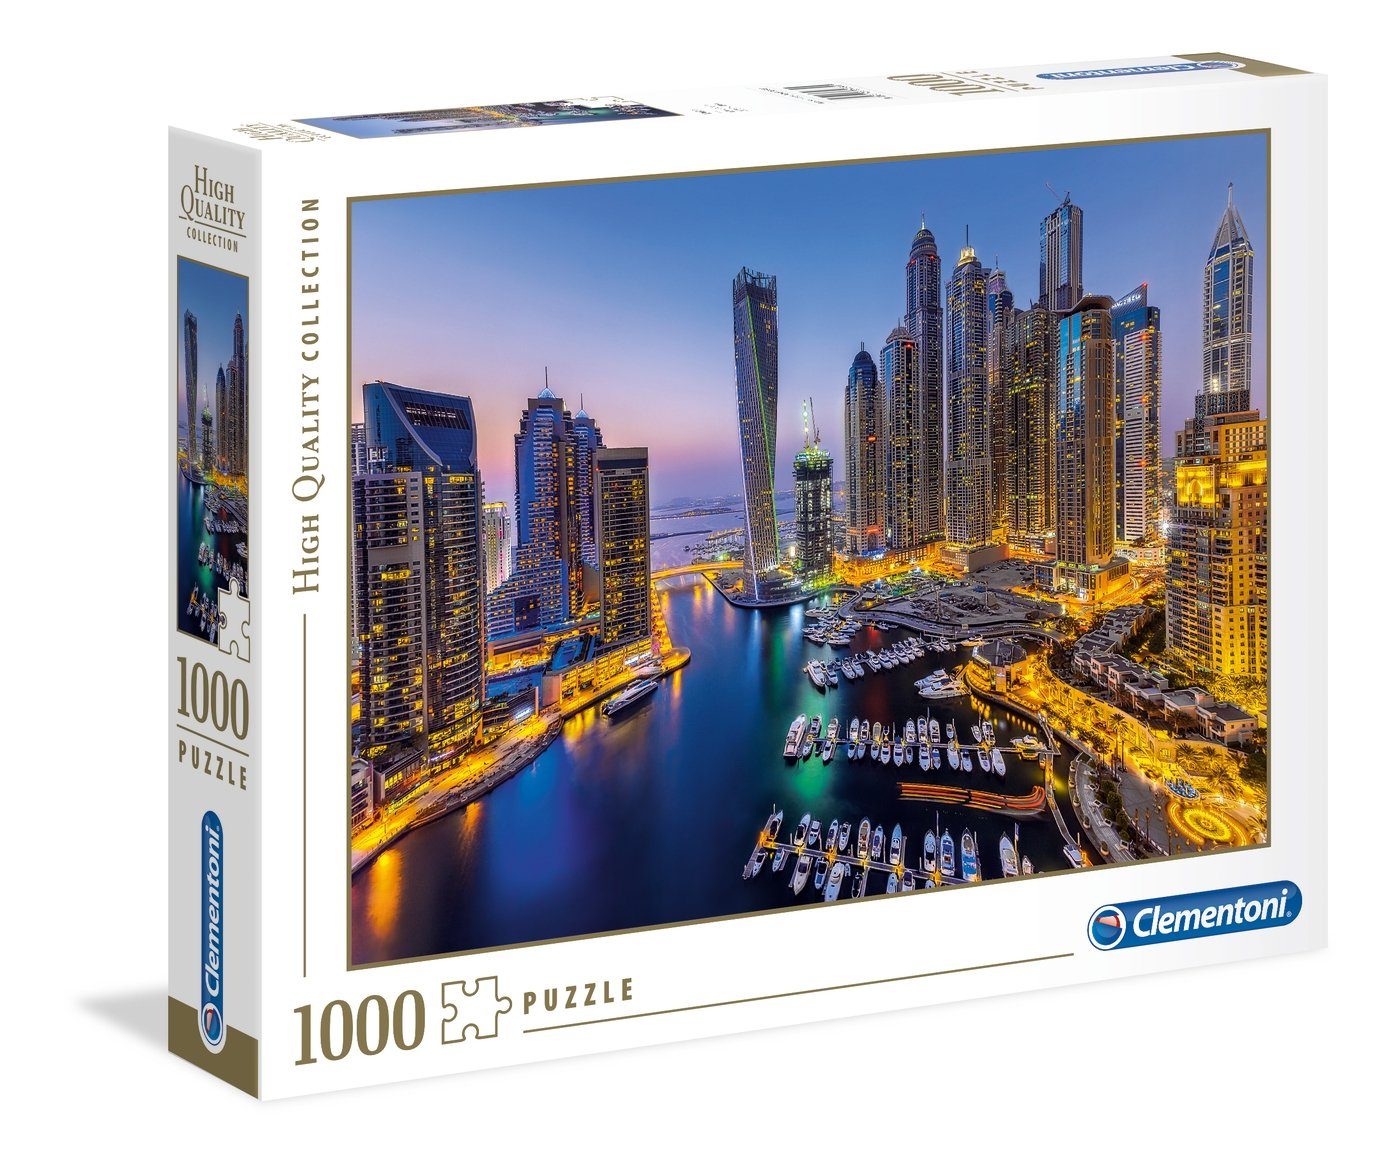 Teile Clementoni 1000 Puzzle 39381 Clementoni® Puzzle, Puzzleteile Dubai